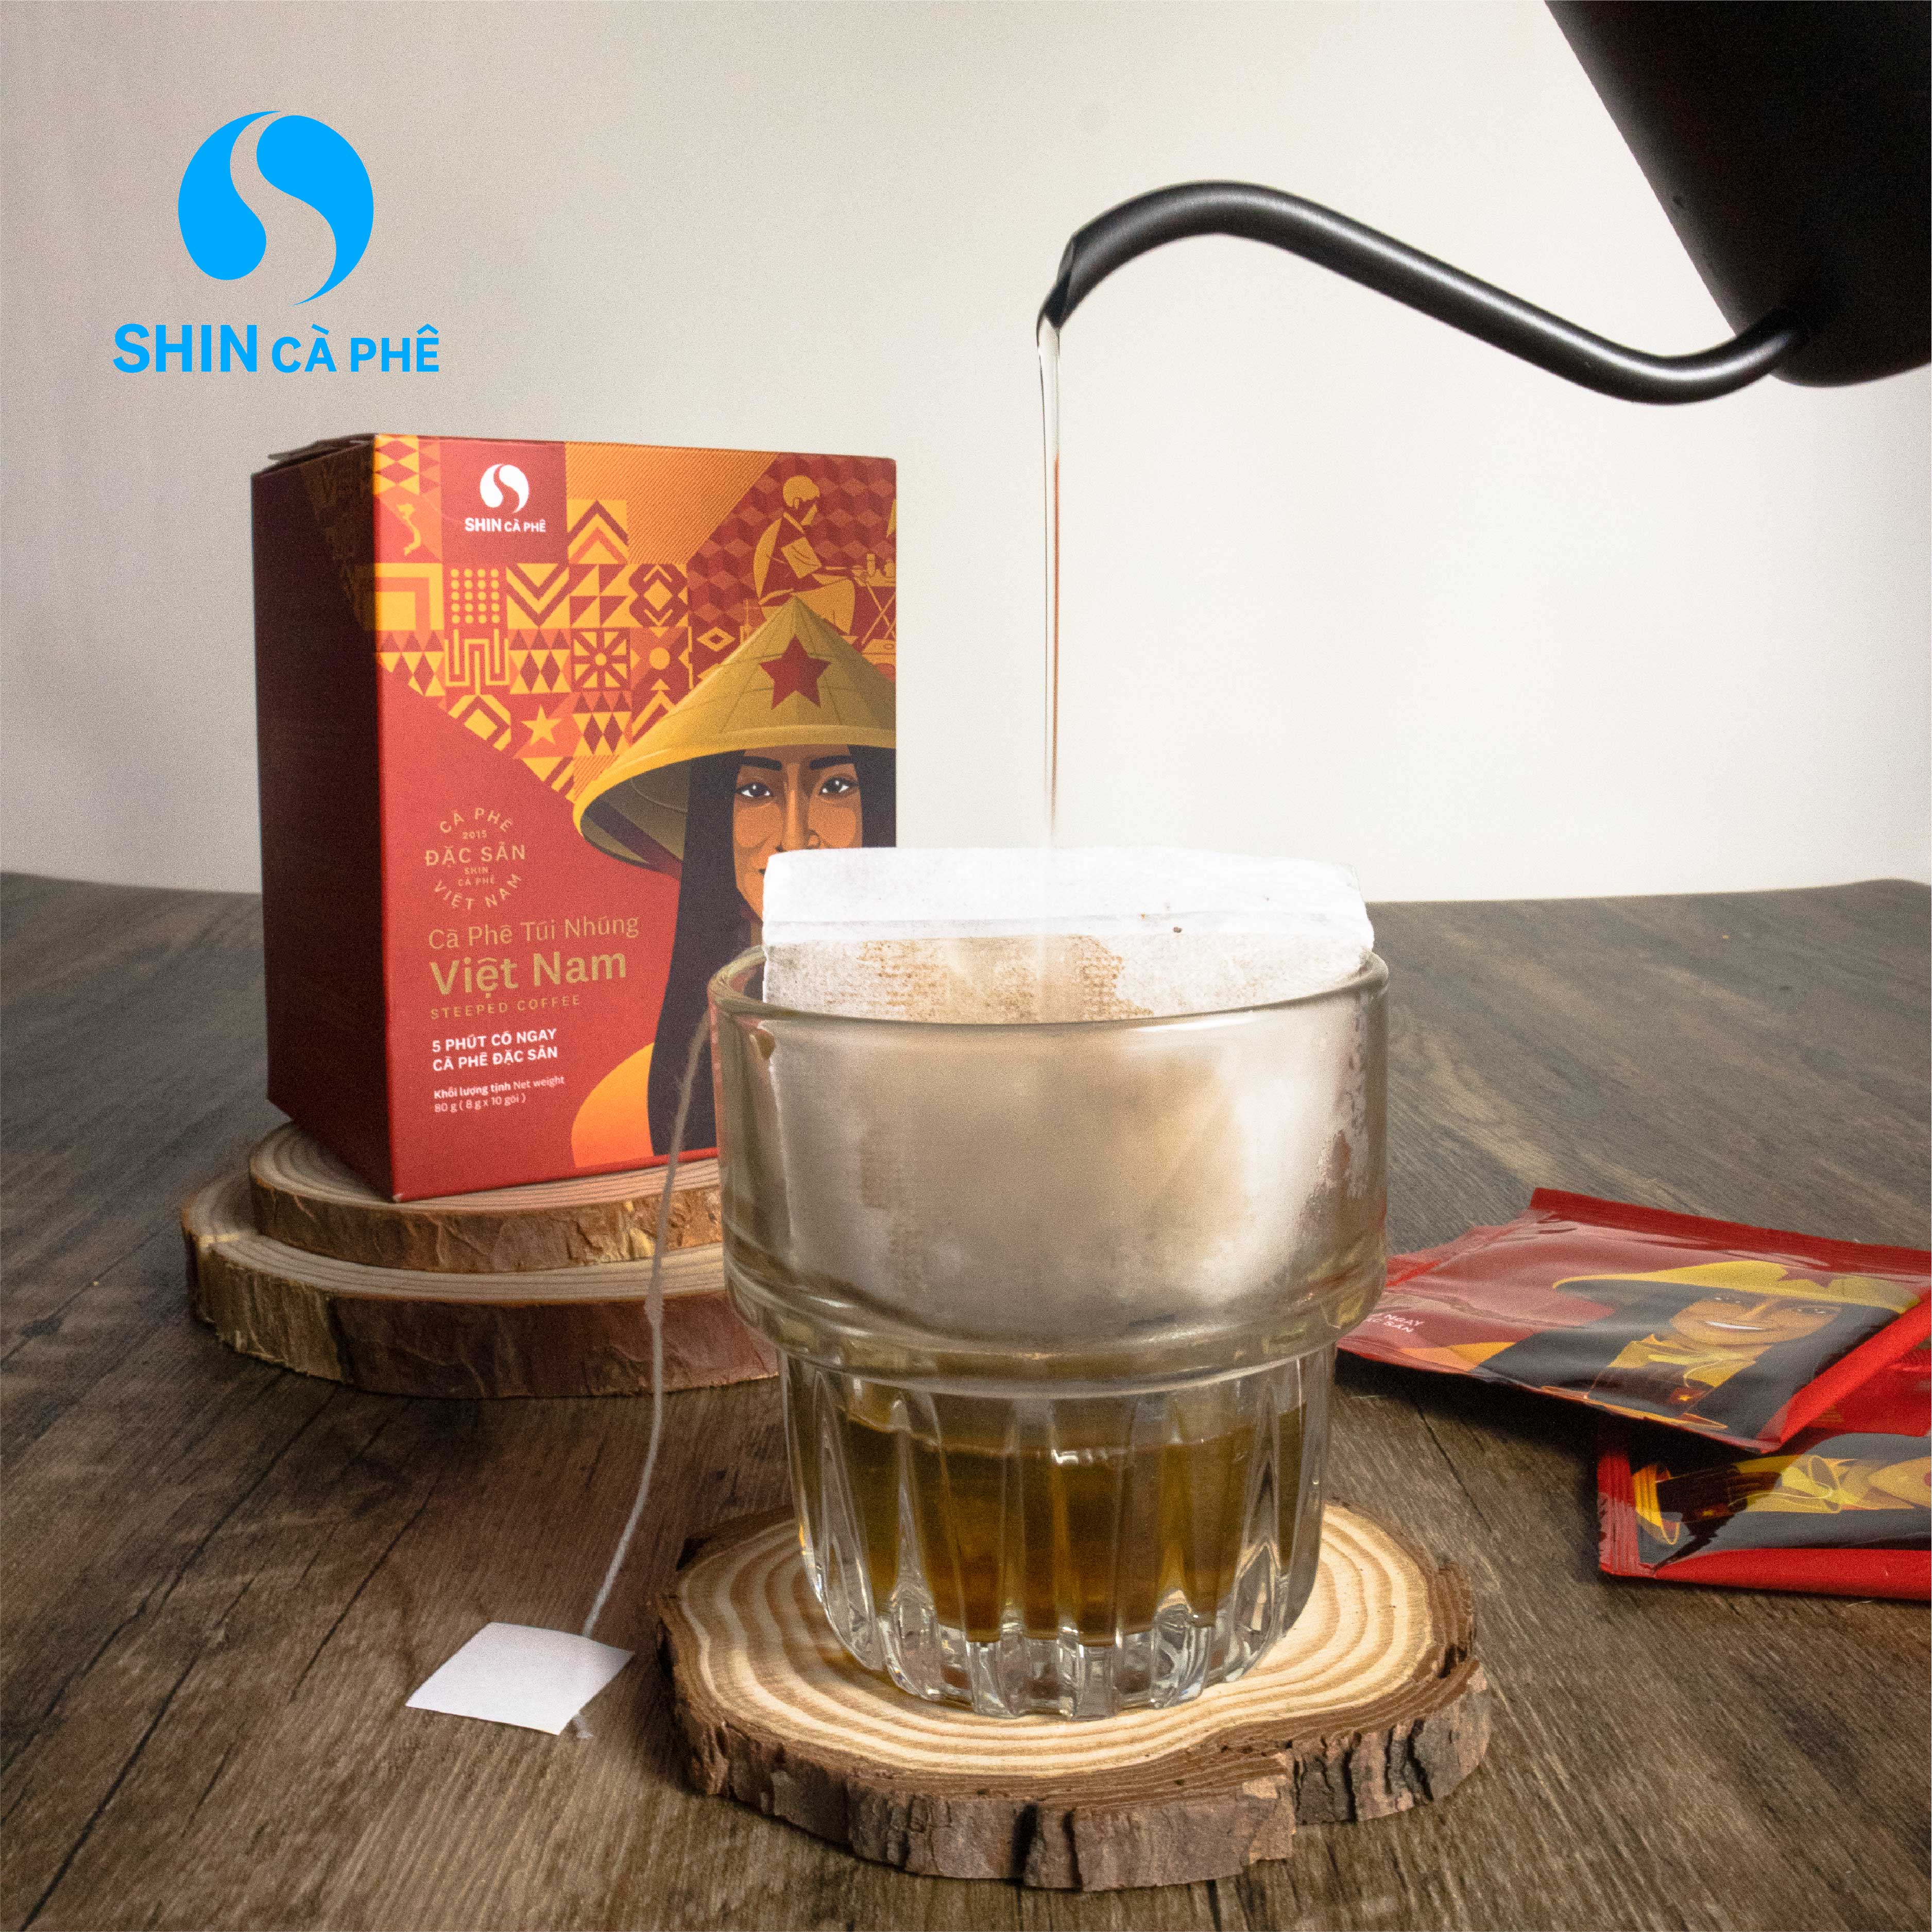 SHIN Cà Phê - Cà phê túi nhúng tiện lợi hộp 10 gói